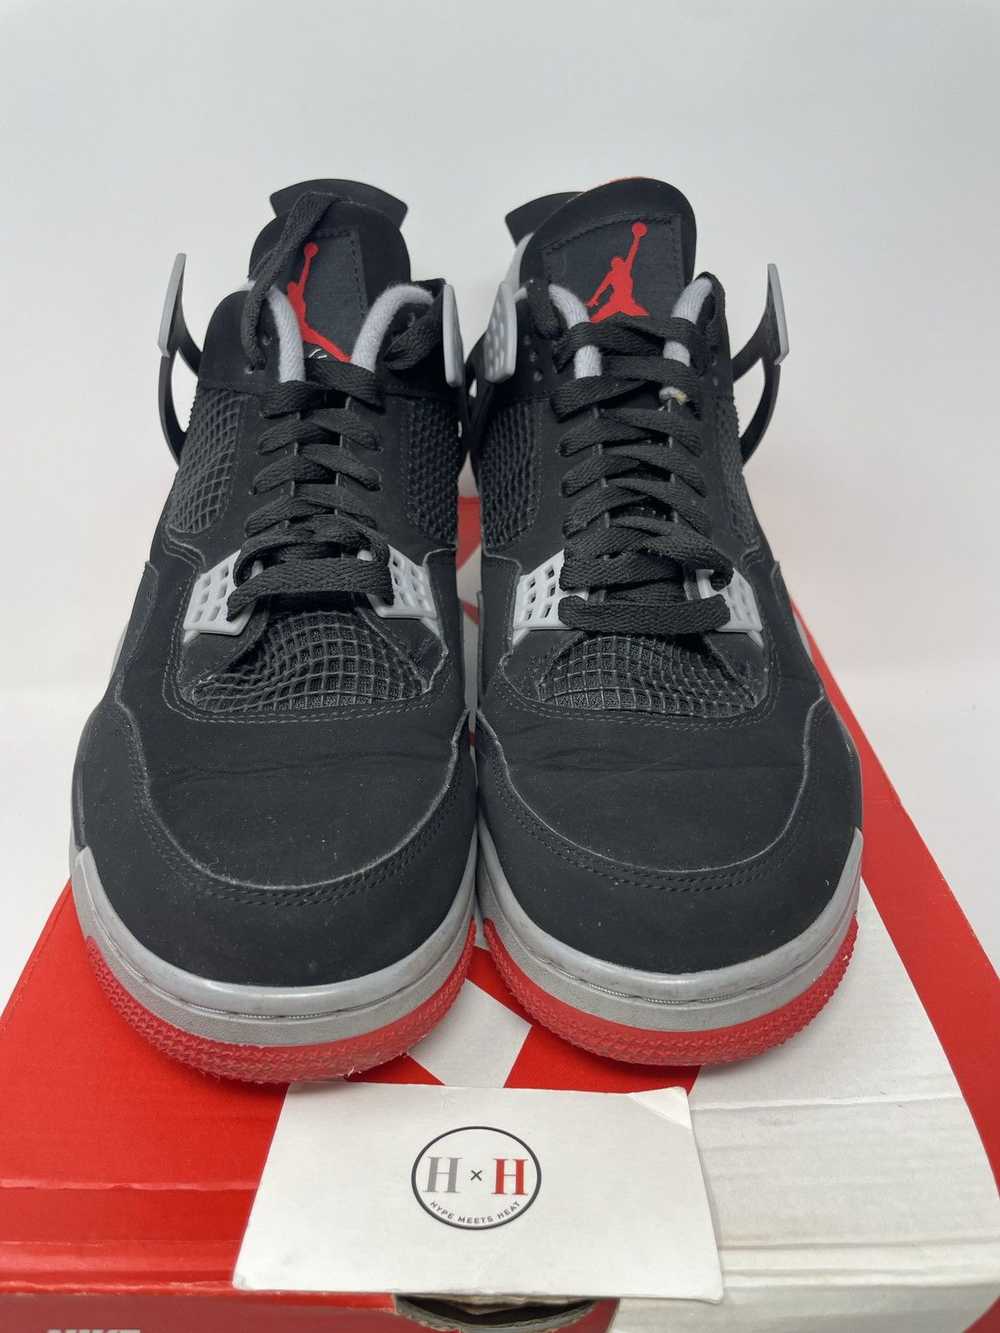 Jordan Brand Air Jordan 4 Retro Bred 2019 - image 4